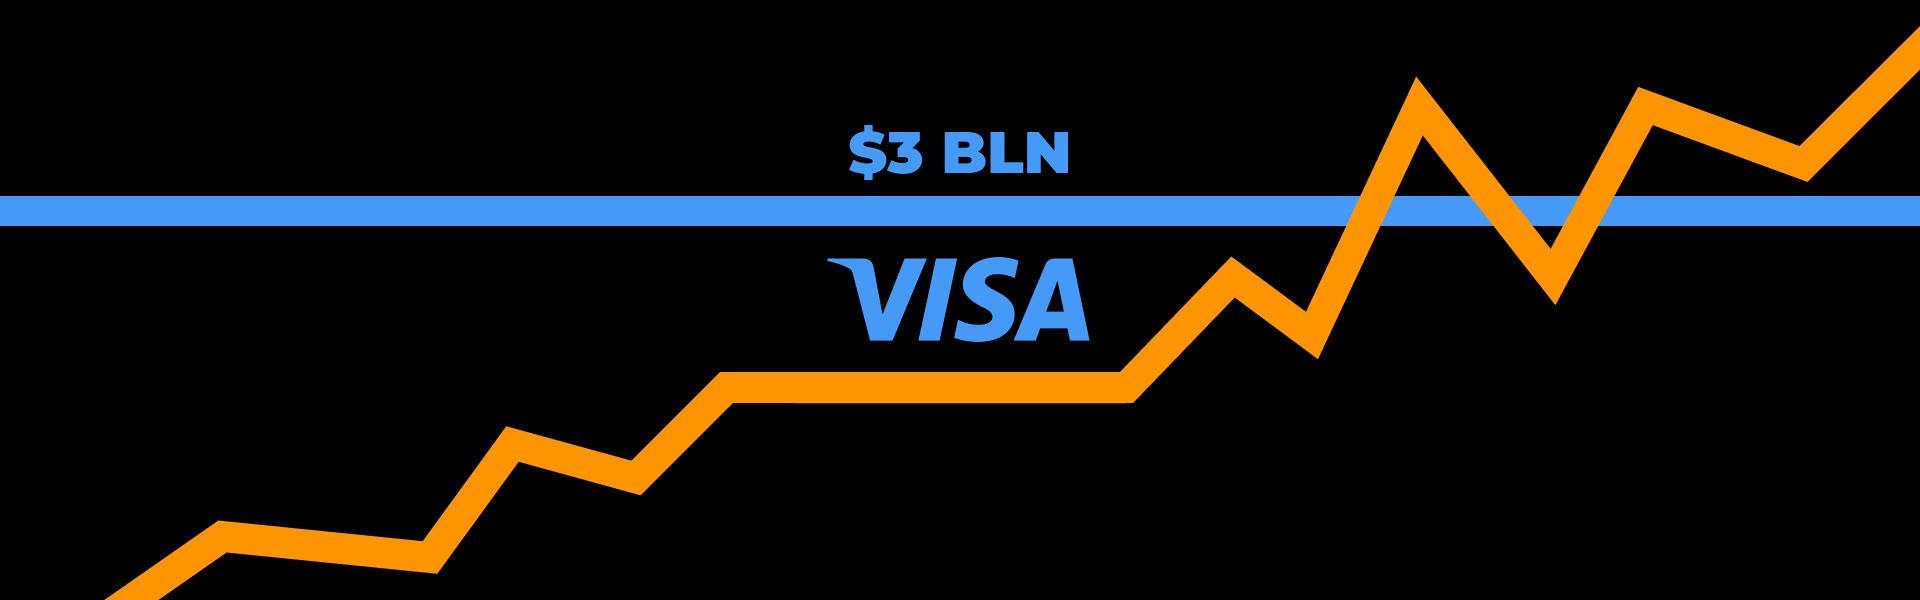 Платежі по біткоїн-картках Visa перевищили $3 млрд